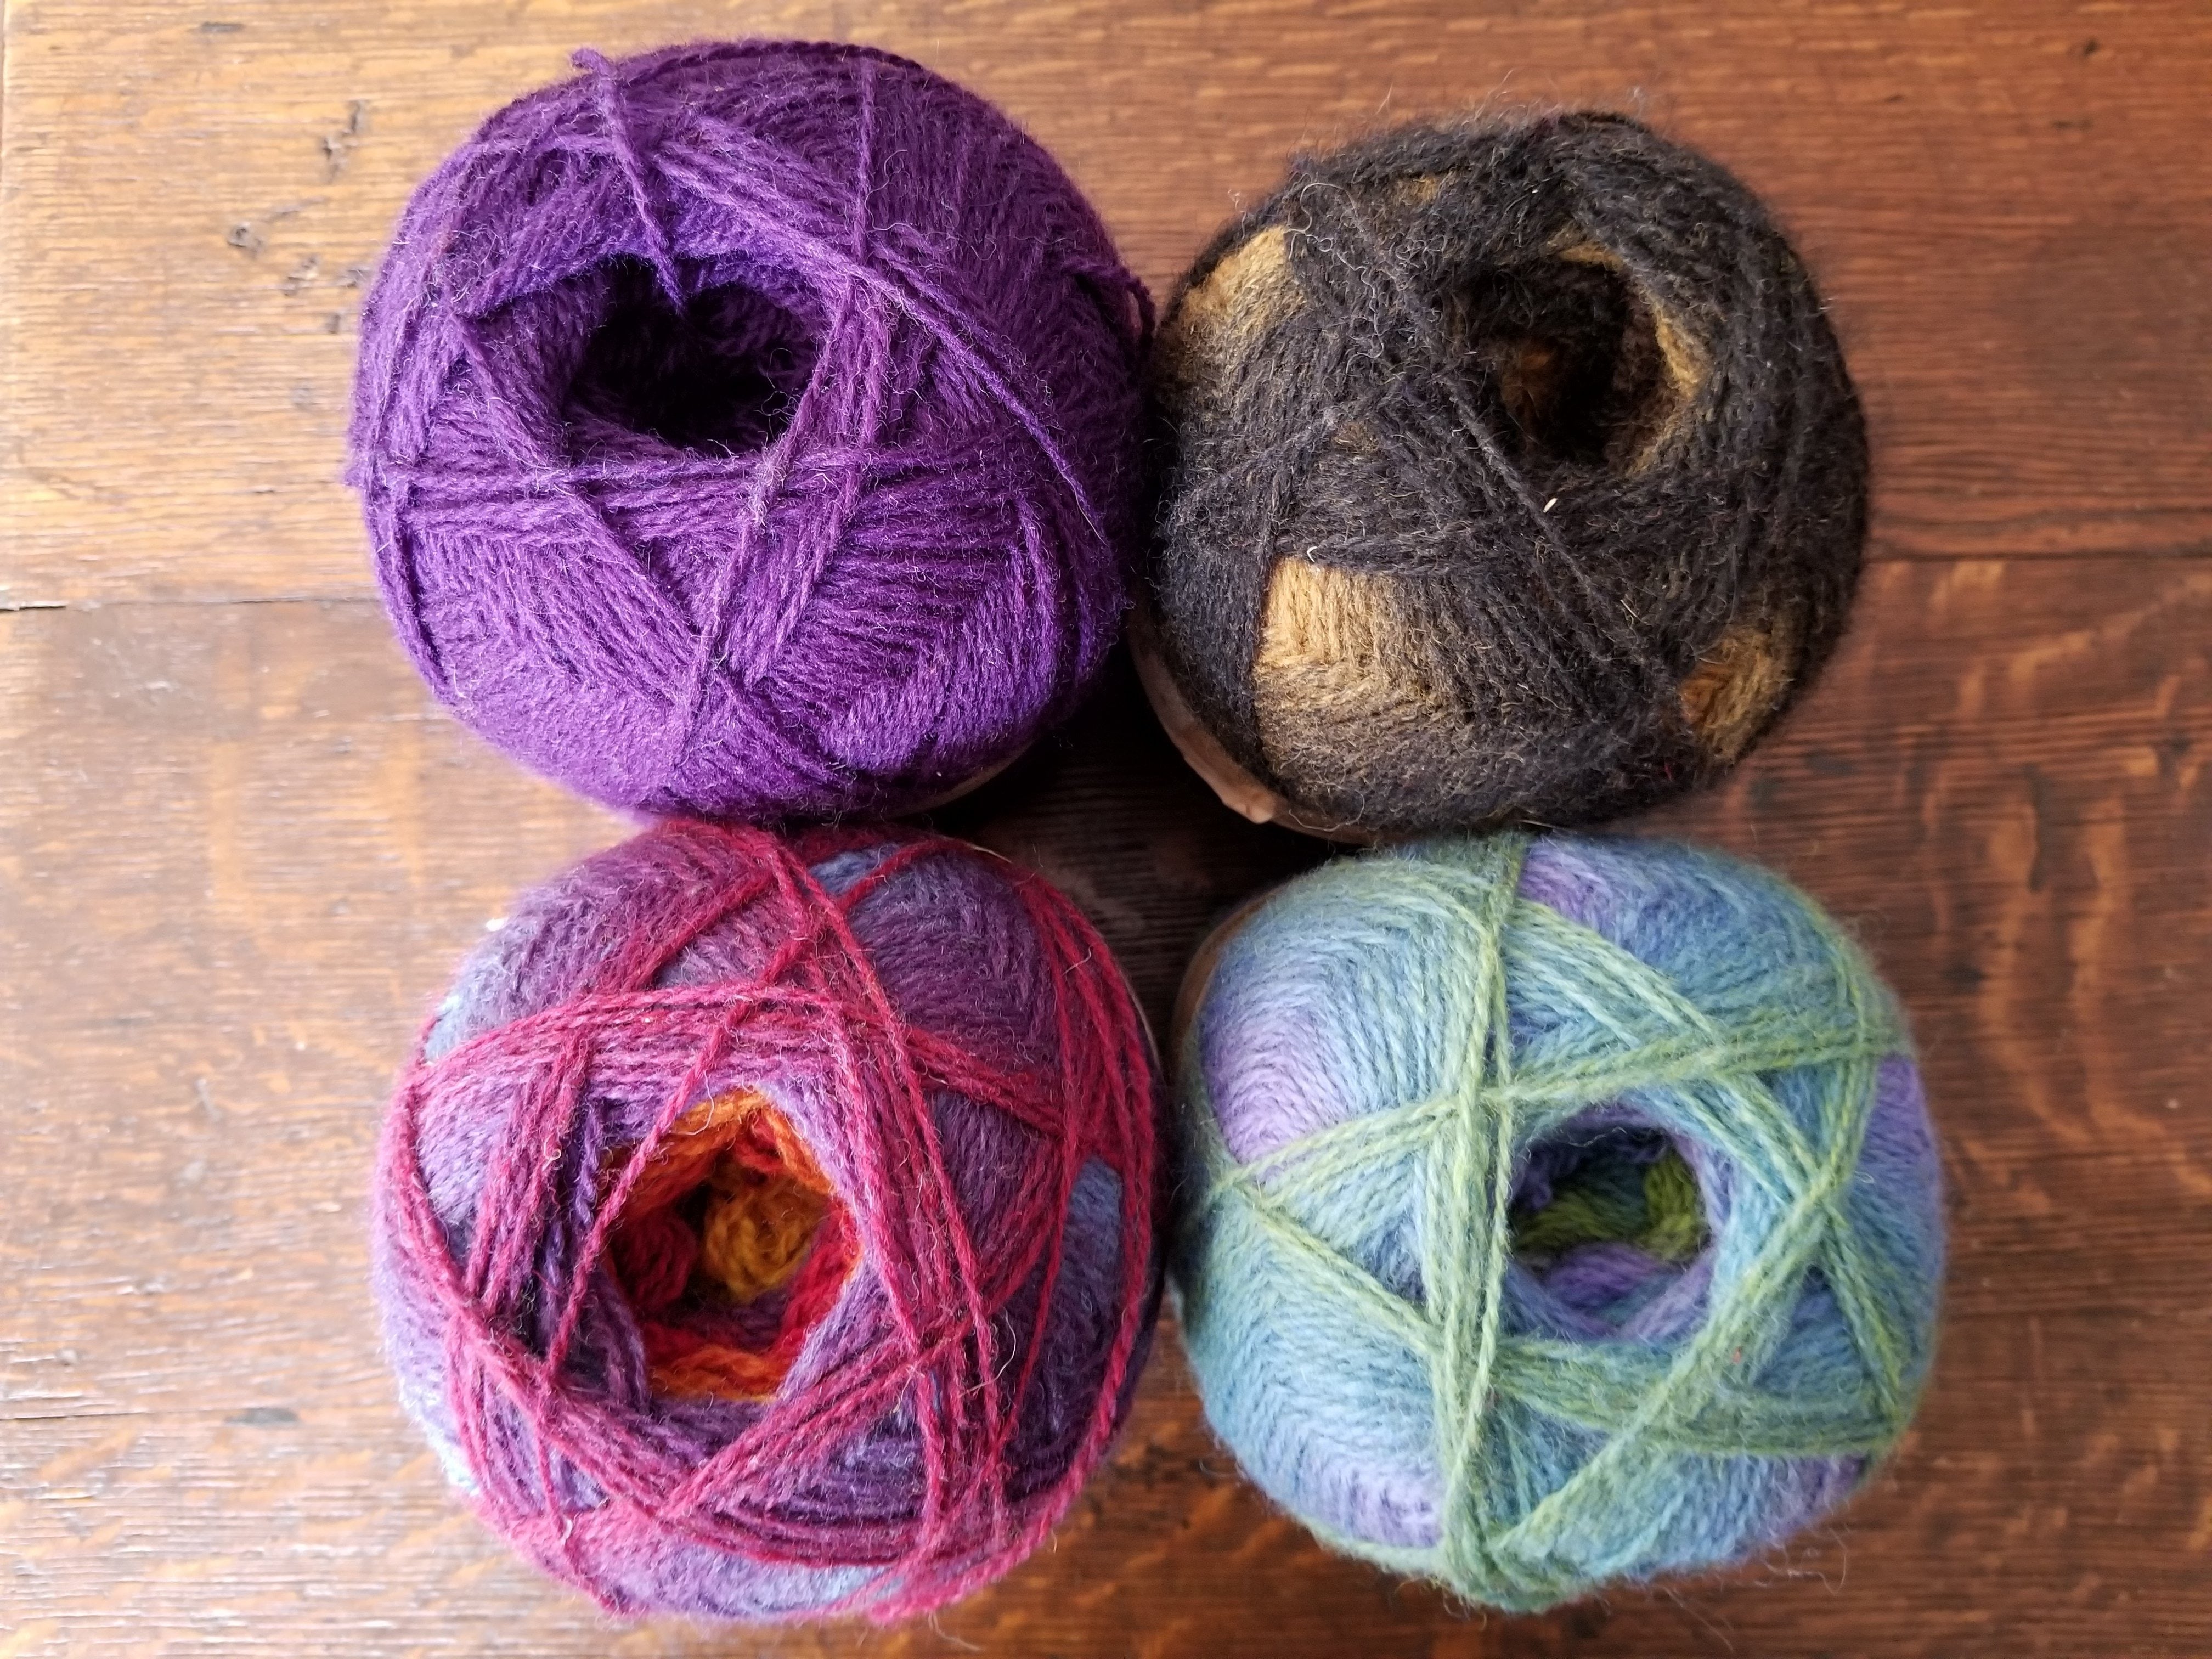 Kauni Design - woolen yarns and fashion